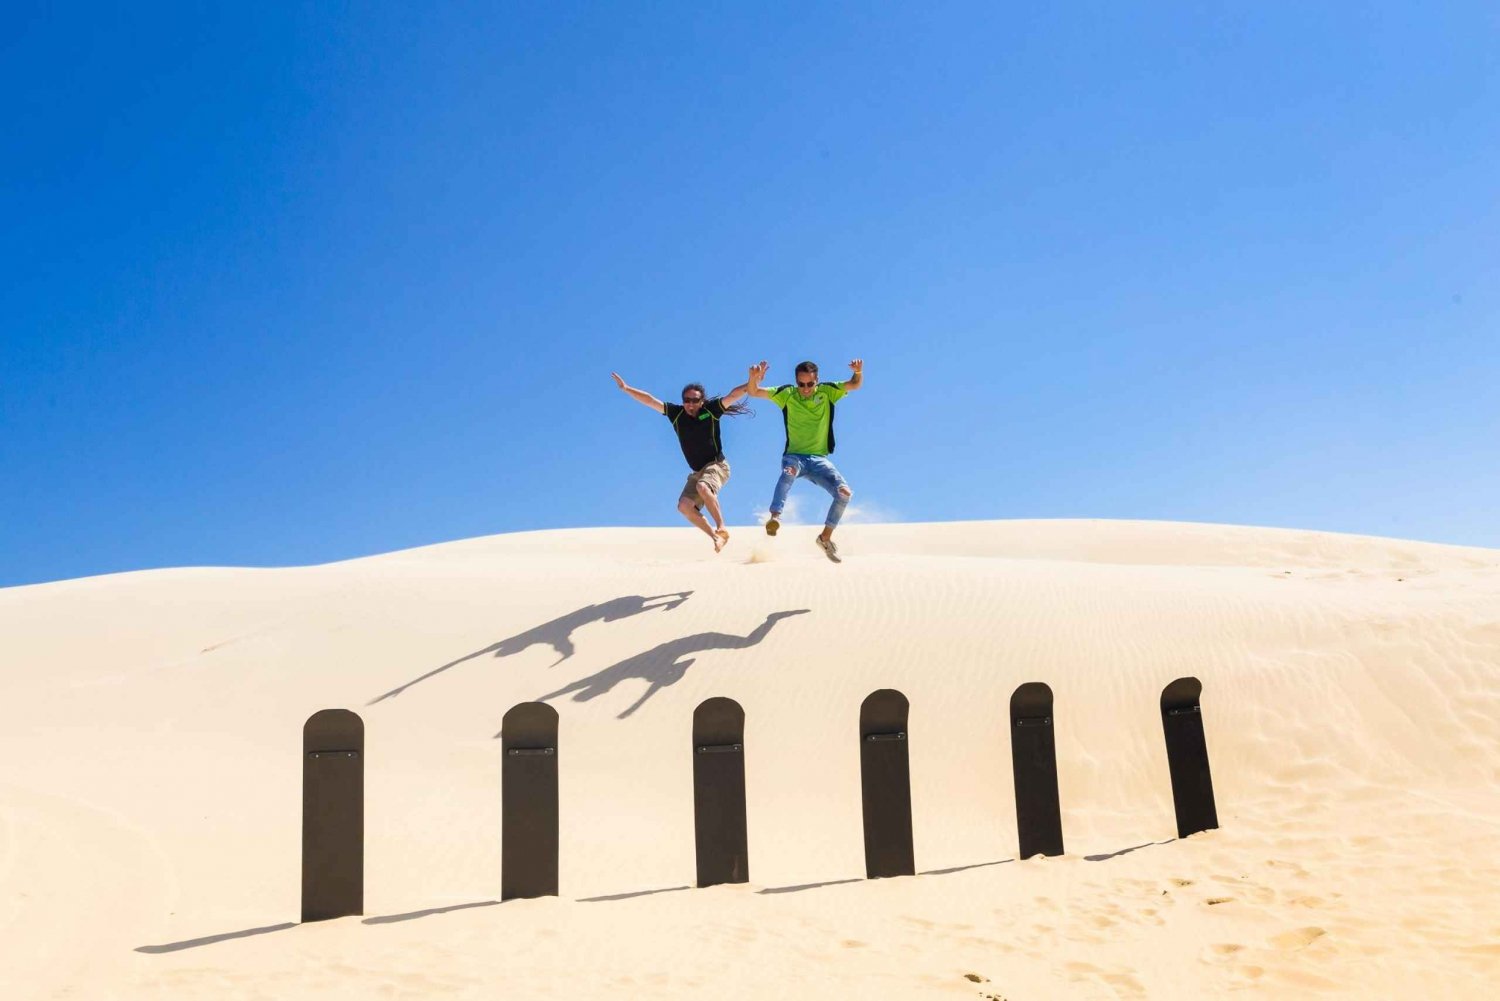 Port Stephens: Sandboard ilimitado e passeio nas dunas de areia 4WD